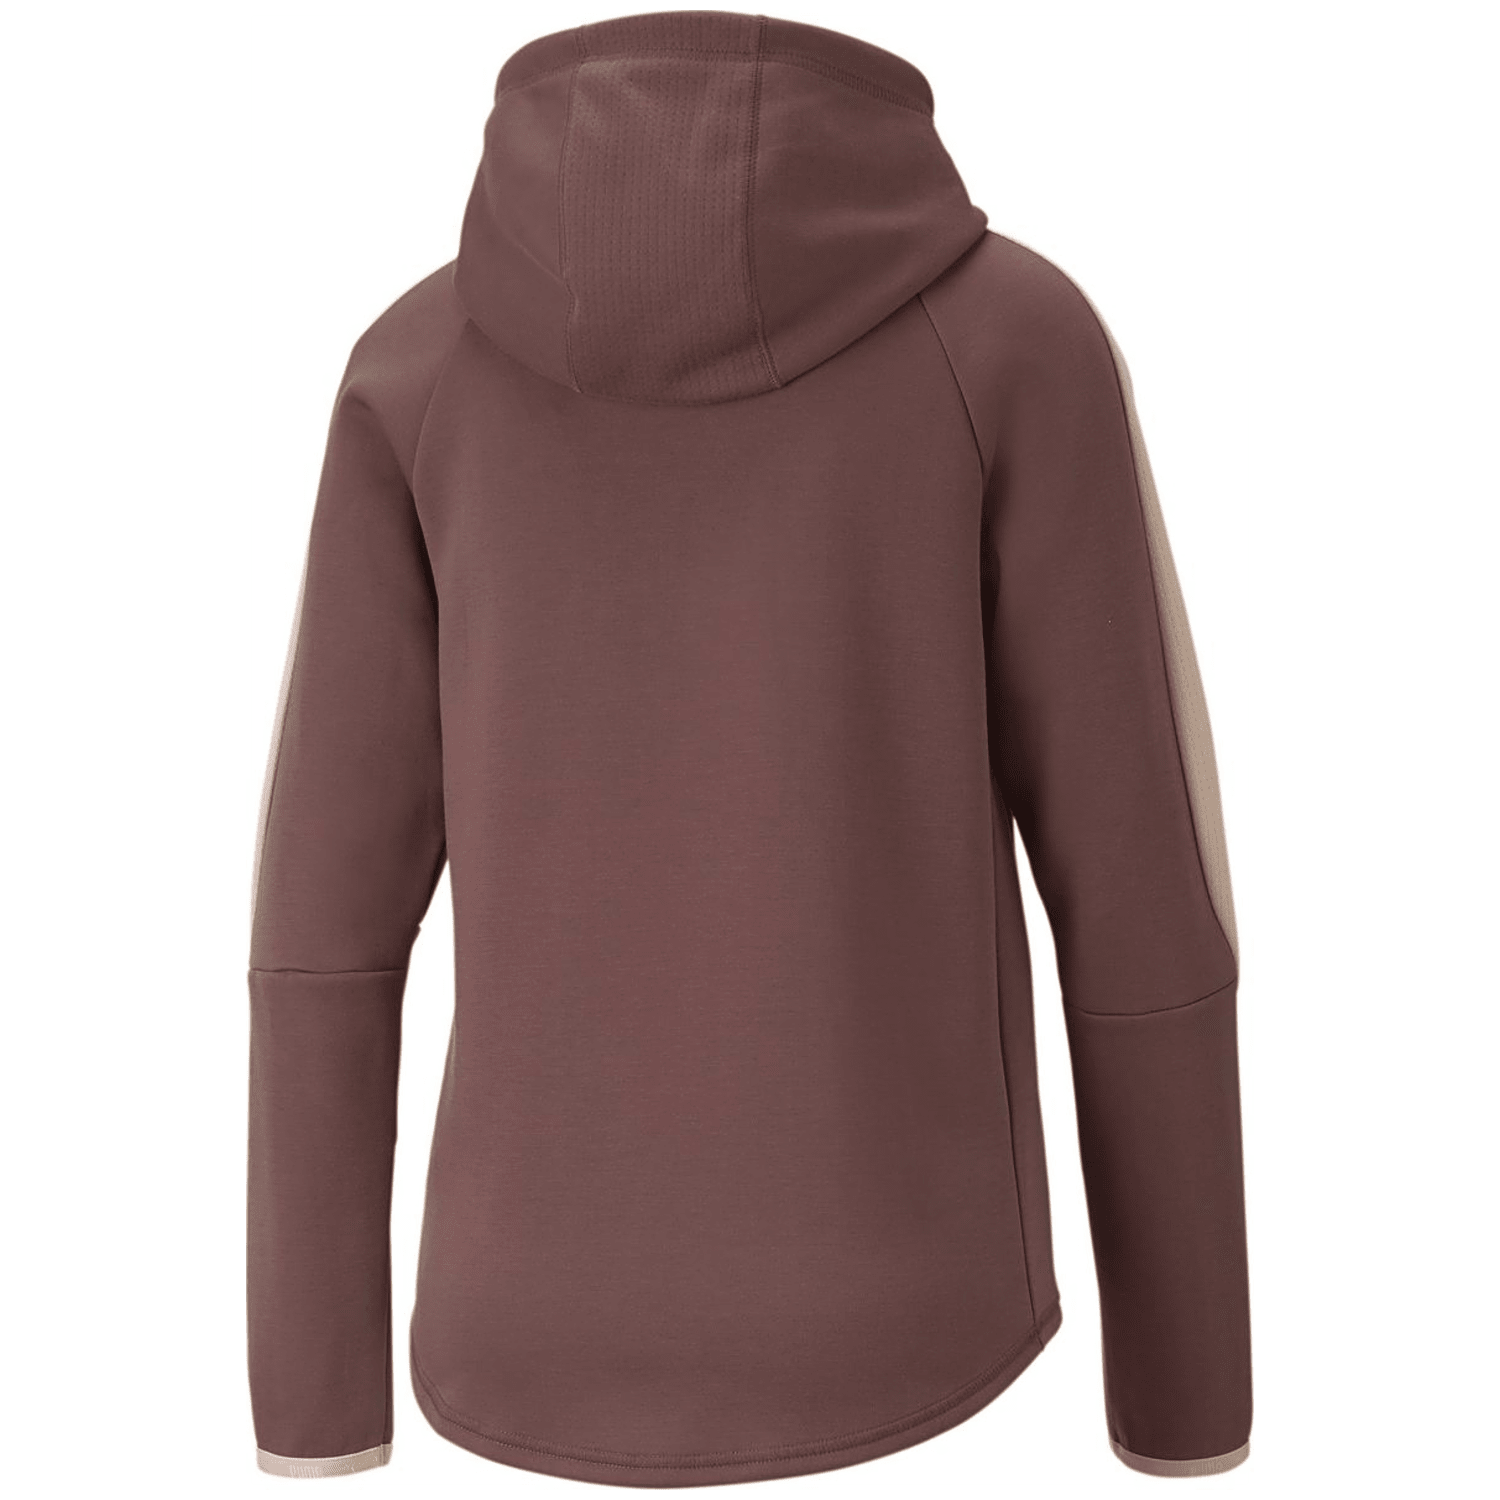 Puma Evostripe Full-Zip Damen Sweatshirt